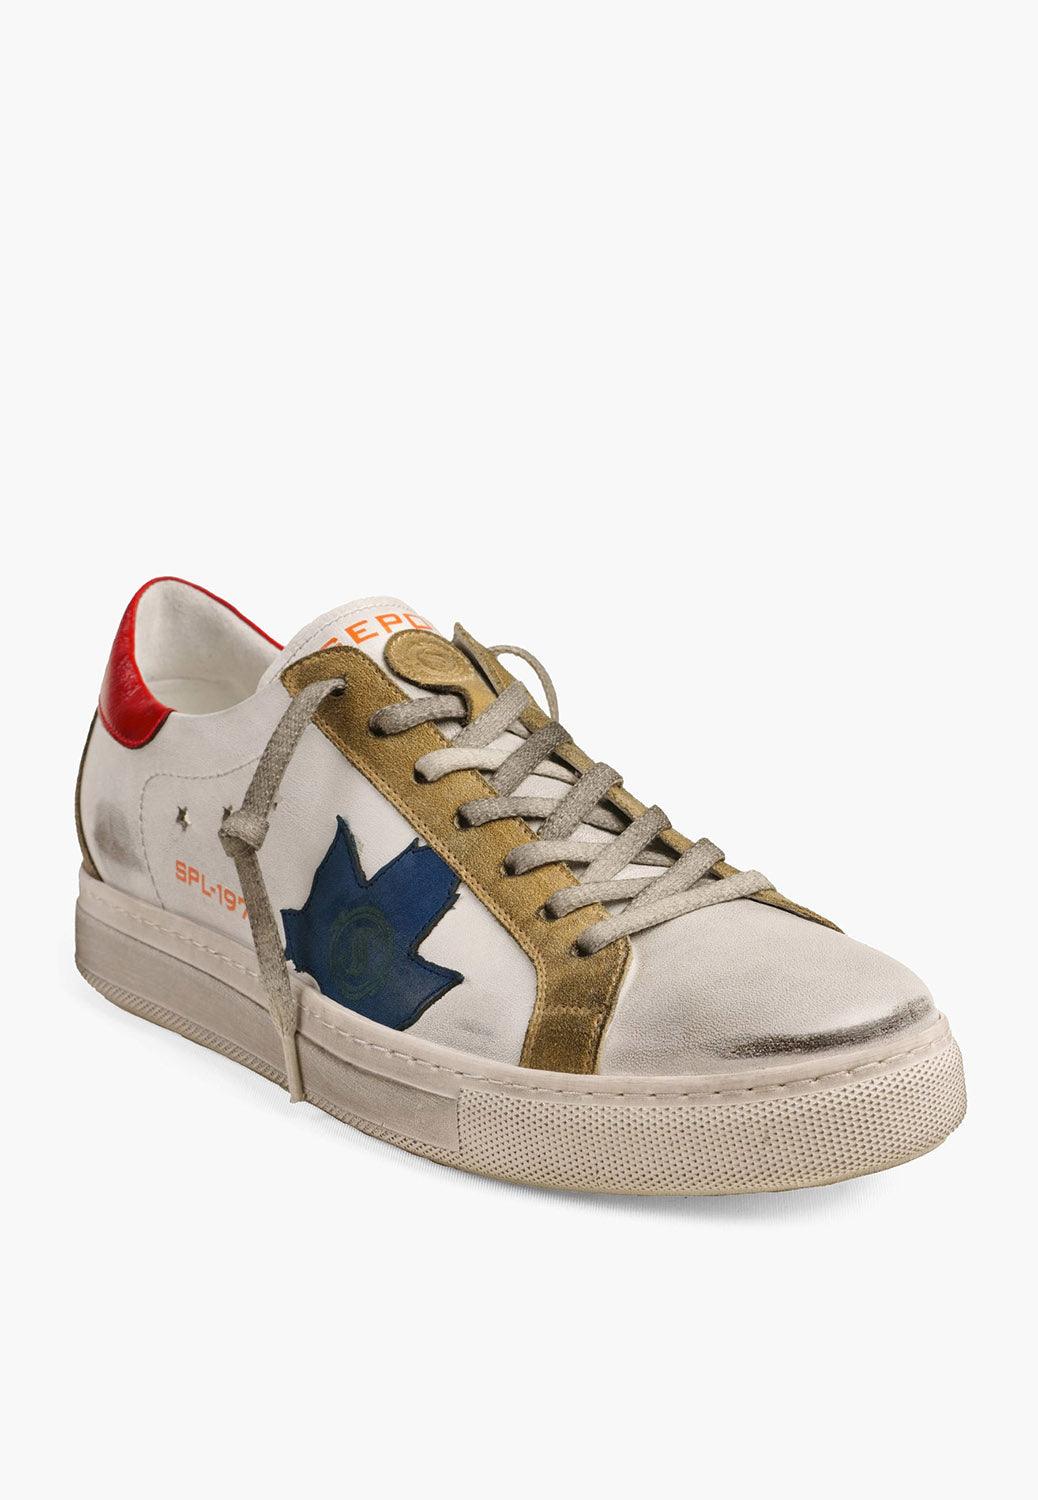 Sepol Ese-Fresh Sneaker White Blue 5